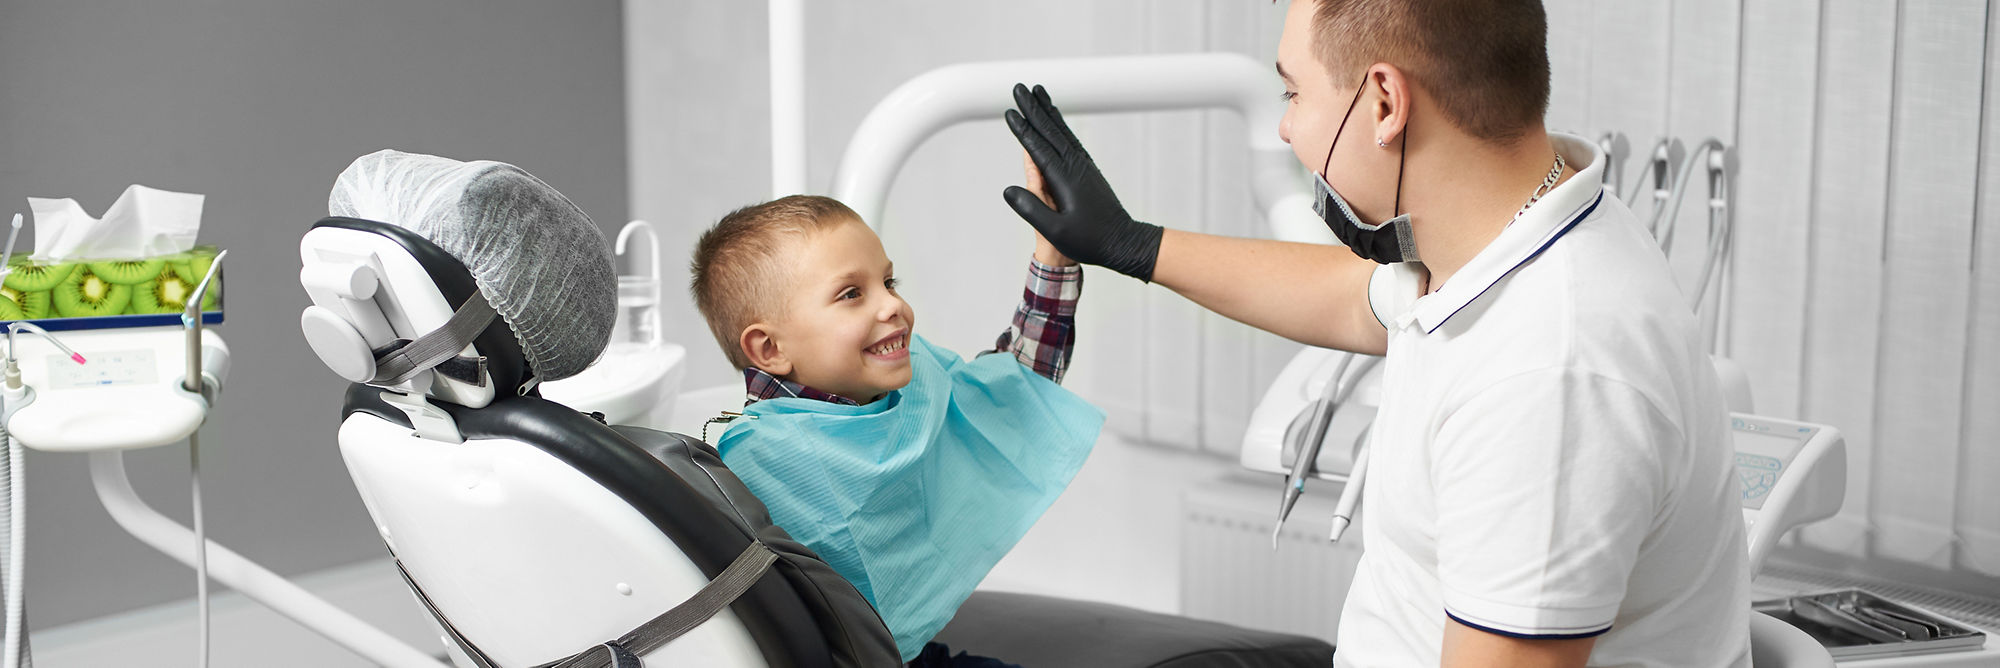 Un niño está feliz después de un tratamiento dental y choca los cinco con su médico en una clínica dental moderna.